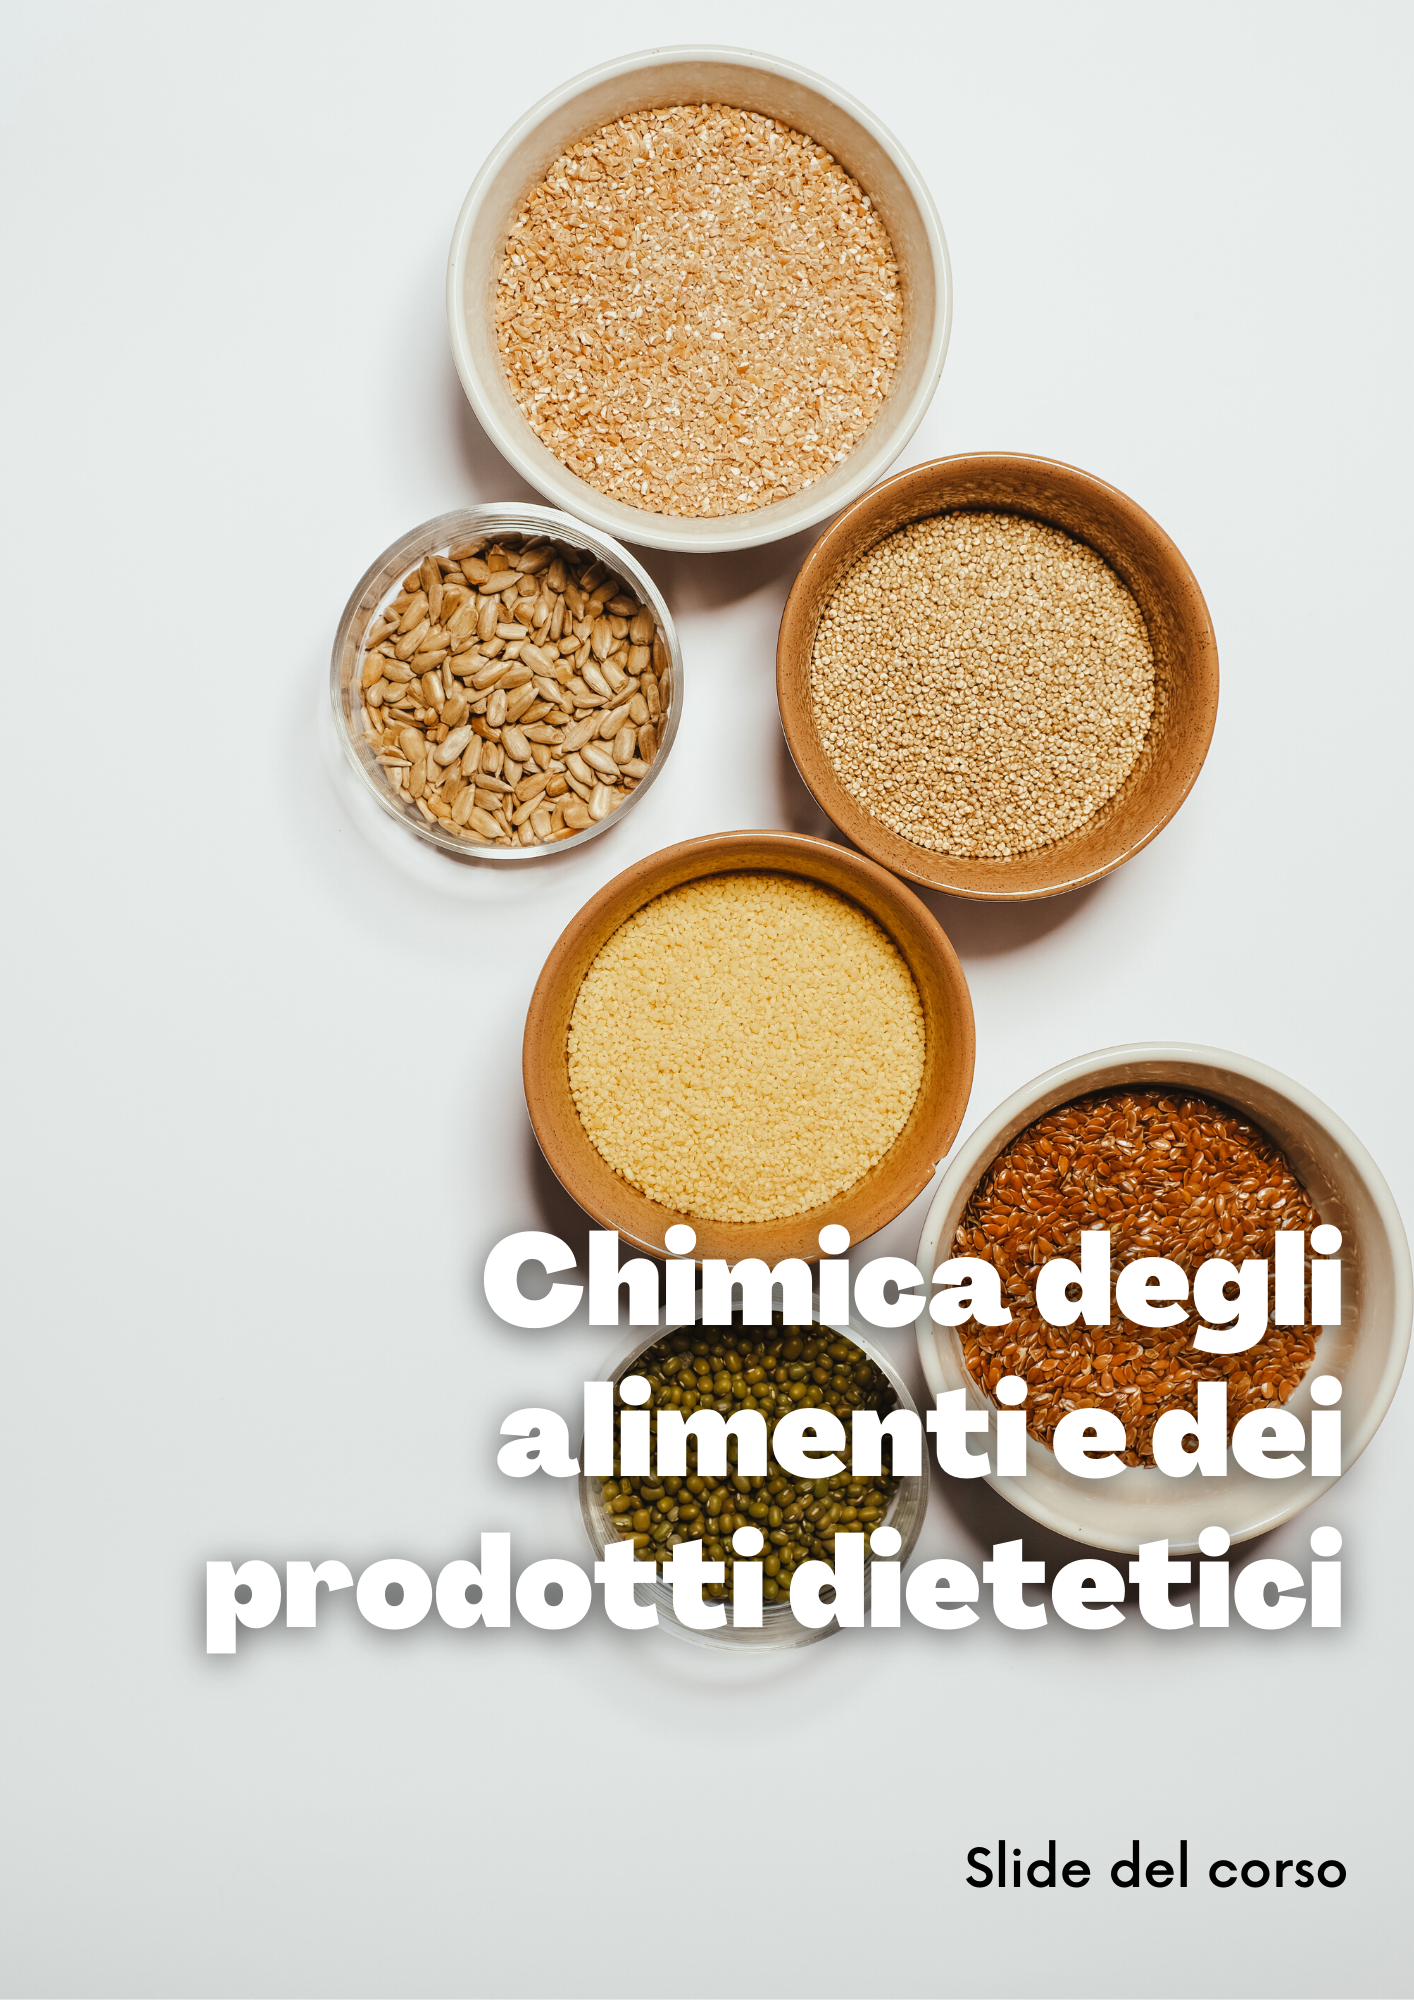 Chimica dei alimenti e dei prodotti dietetici - Slide - Farmacia